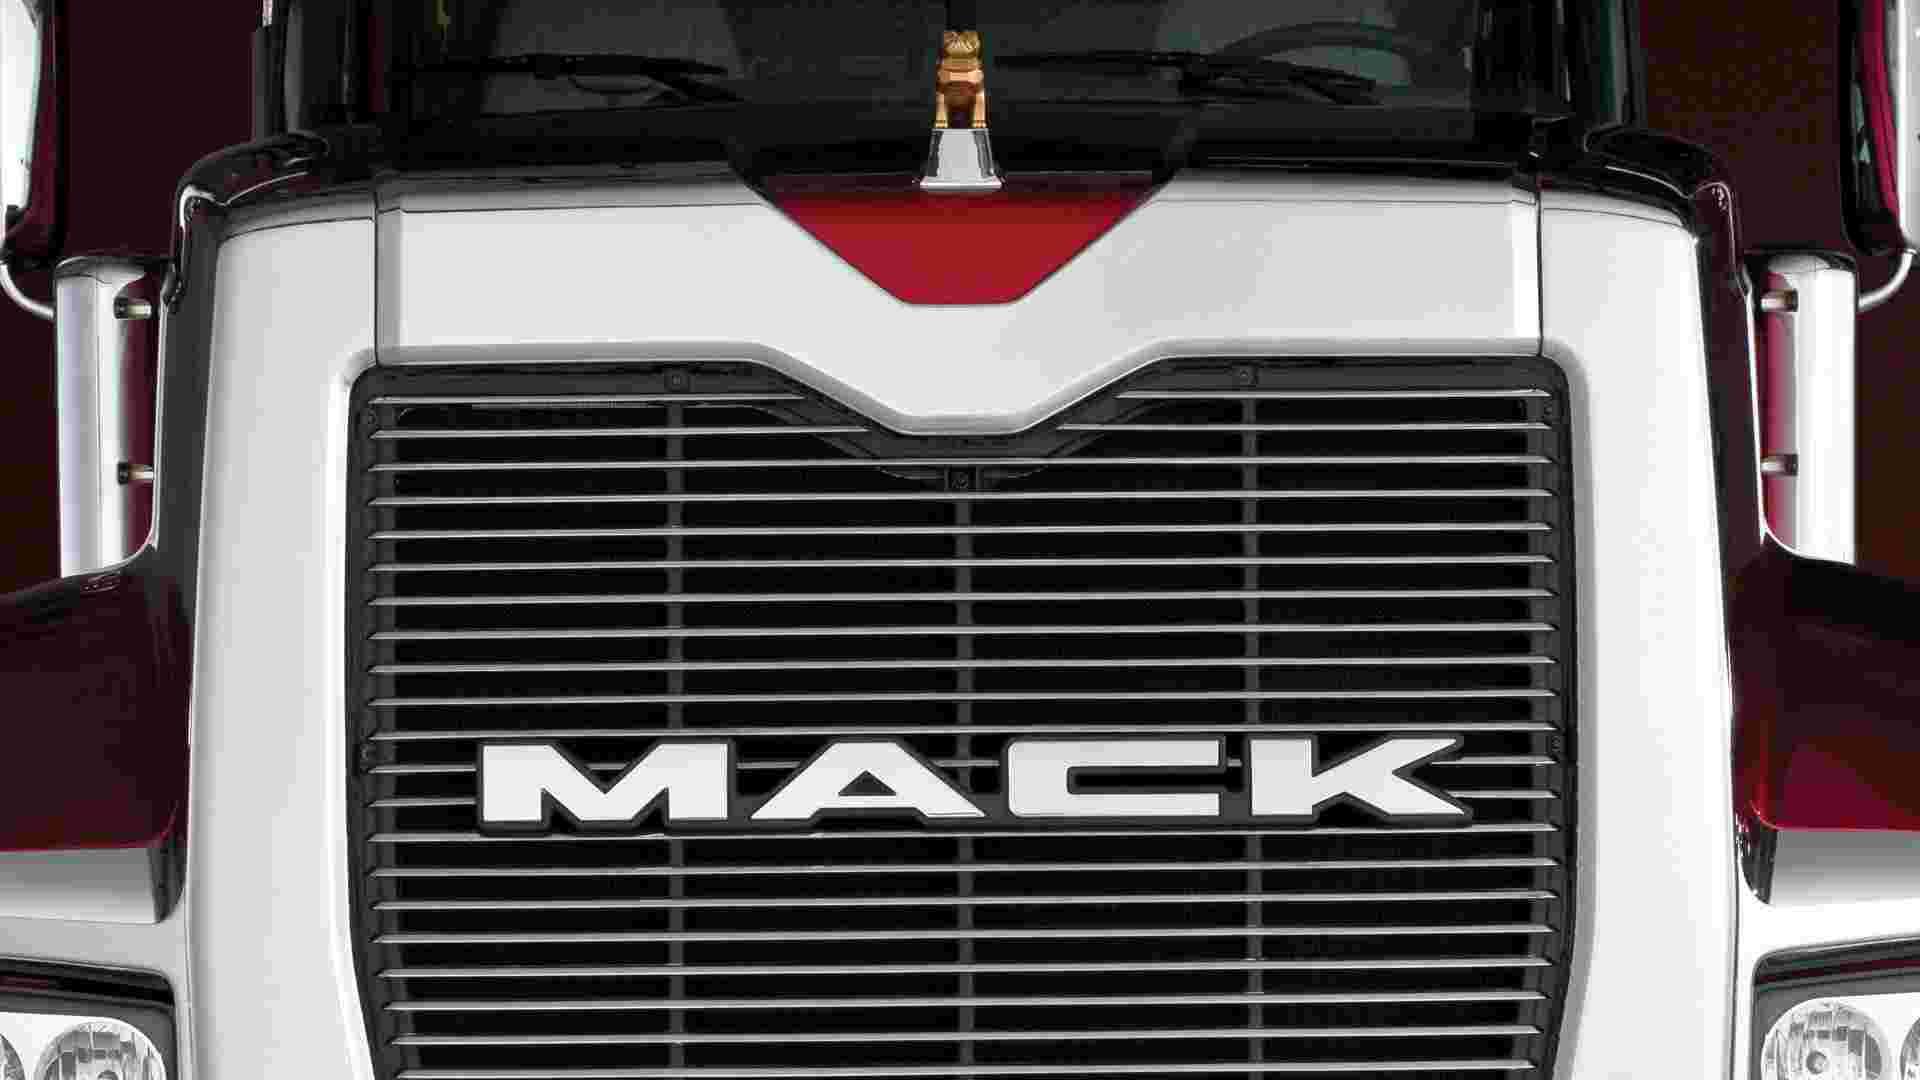 Download Mack Truck Wallpaper Desktop Background